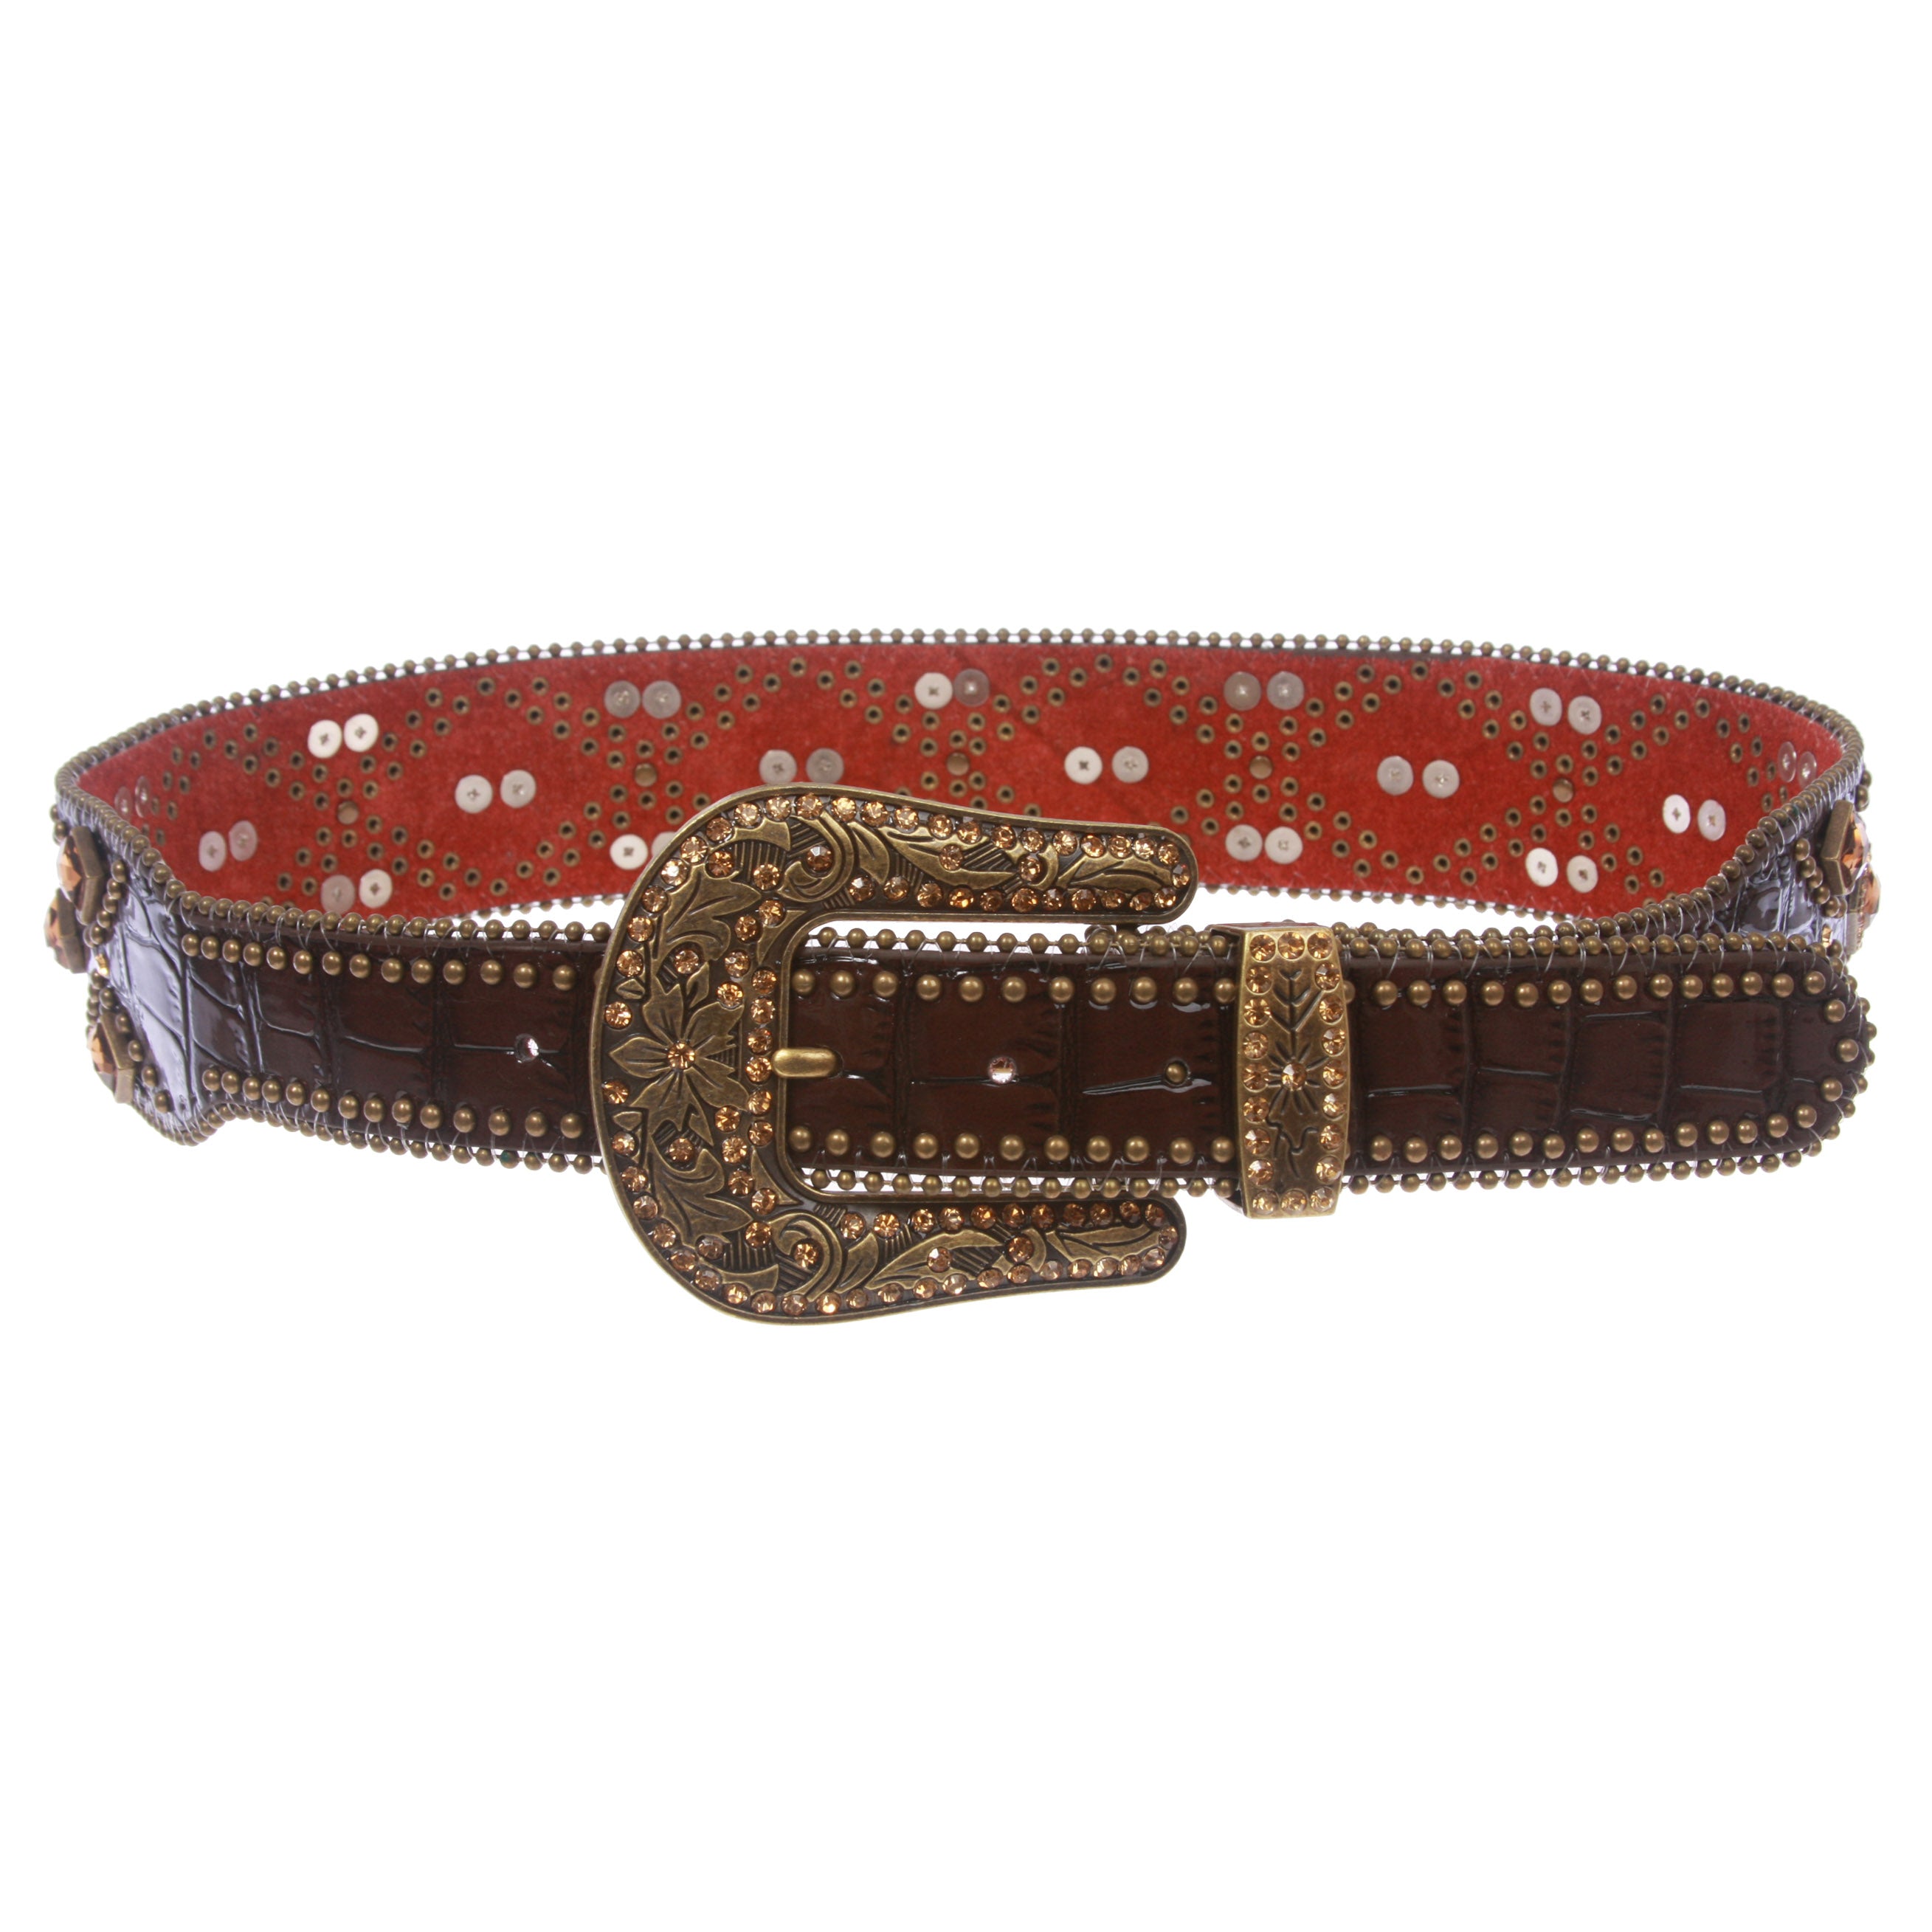 2 1/4" Wide Western Alligator Cowgirl Rhinestone Studded Leather Belt